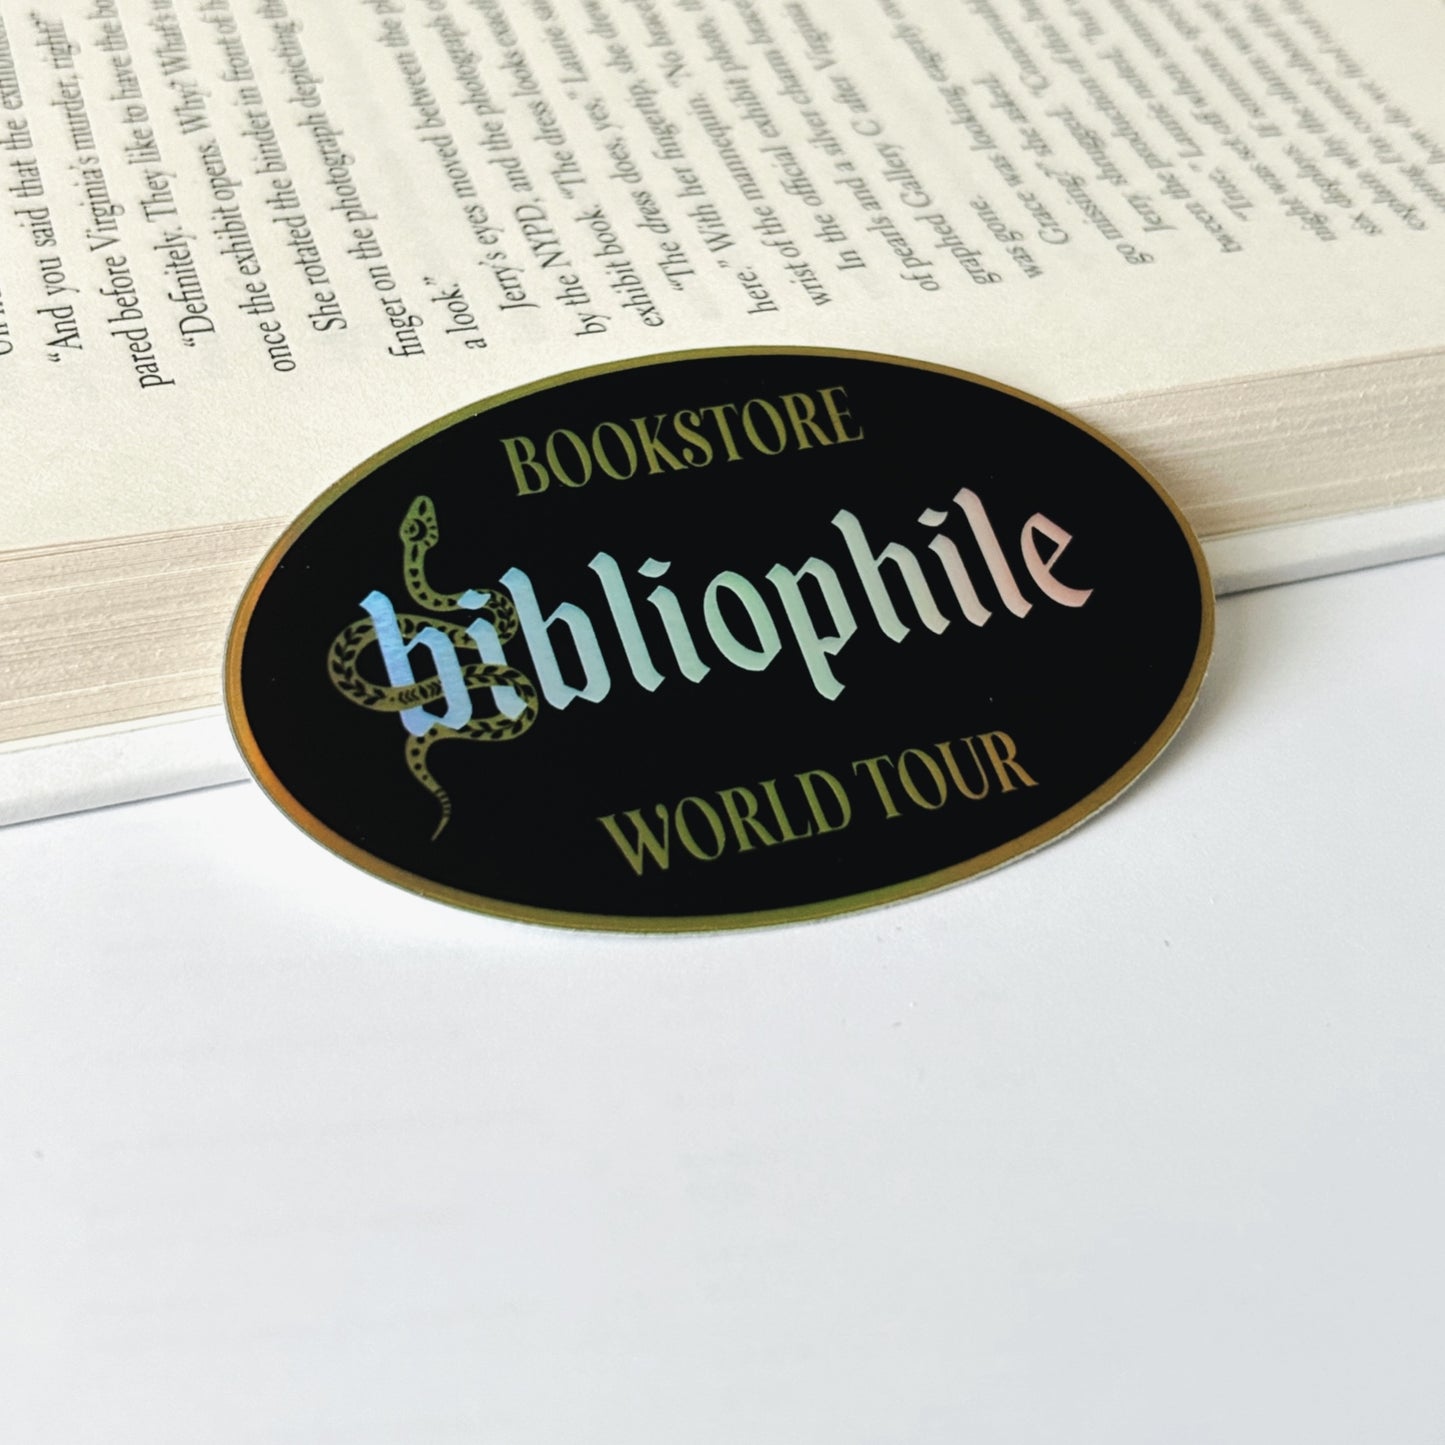 Bibliophile Bookstore World Holographic Sticker